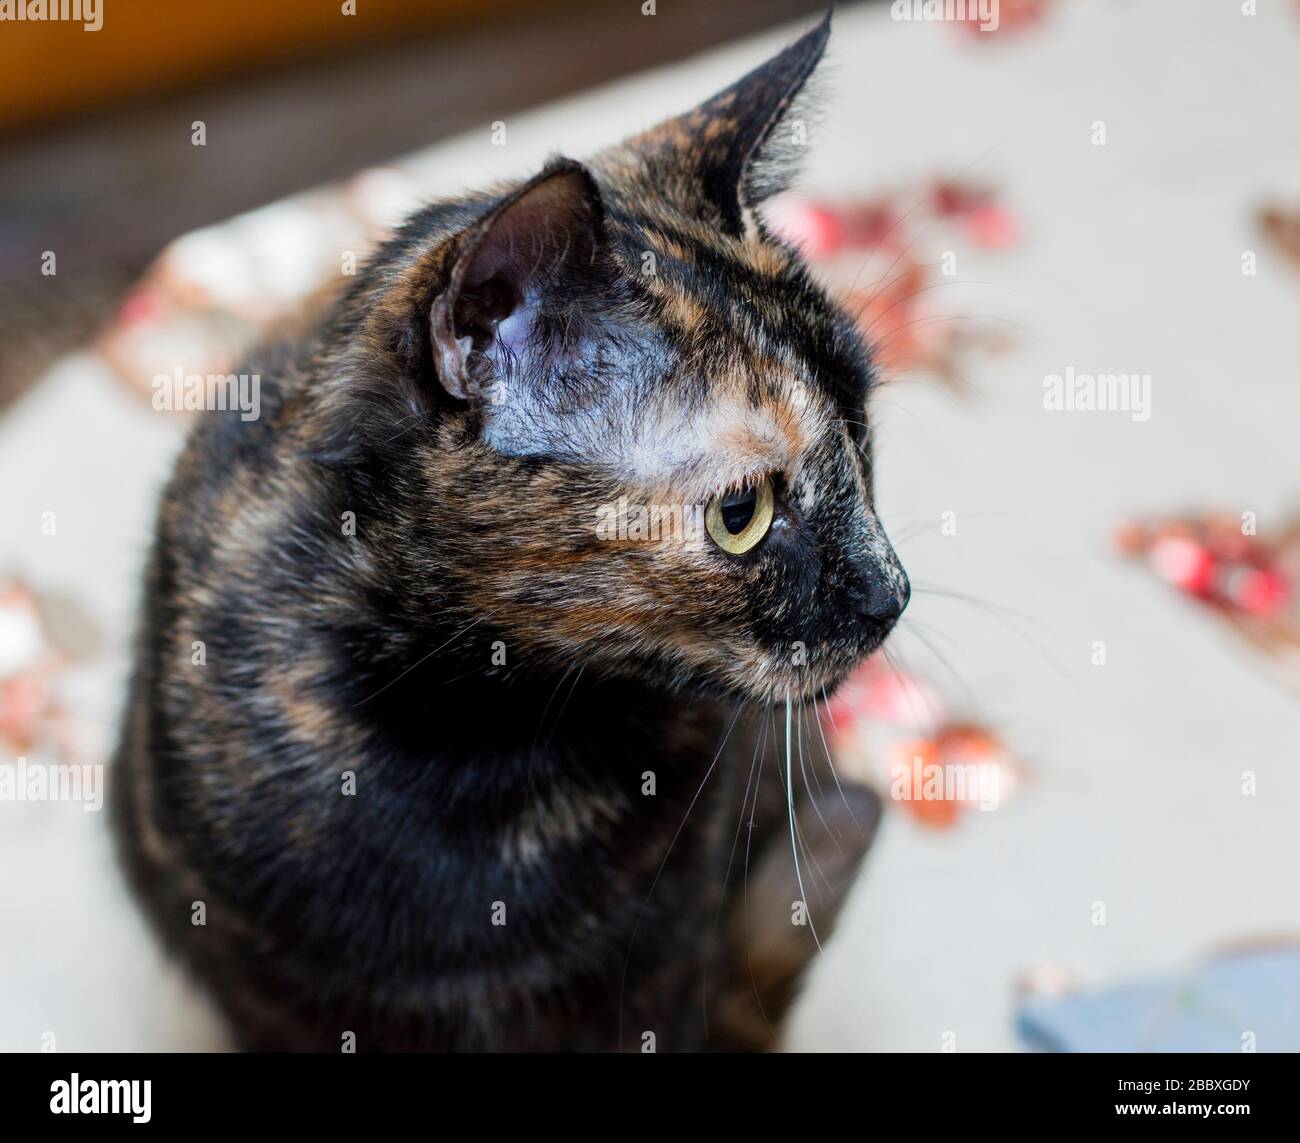 ritratto di un gatto macchiato sul tavolo da cucina, il tema dei gatti domestici Foto Stock